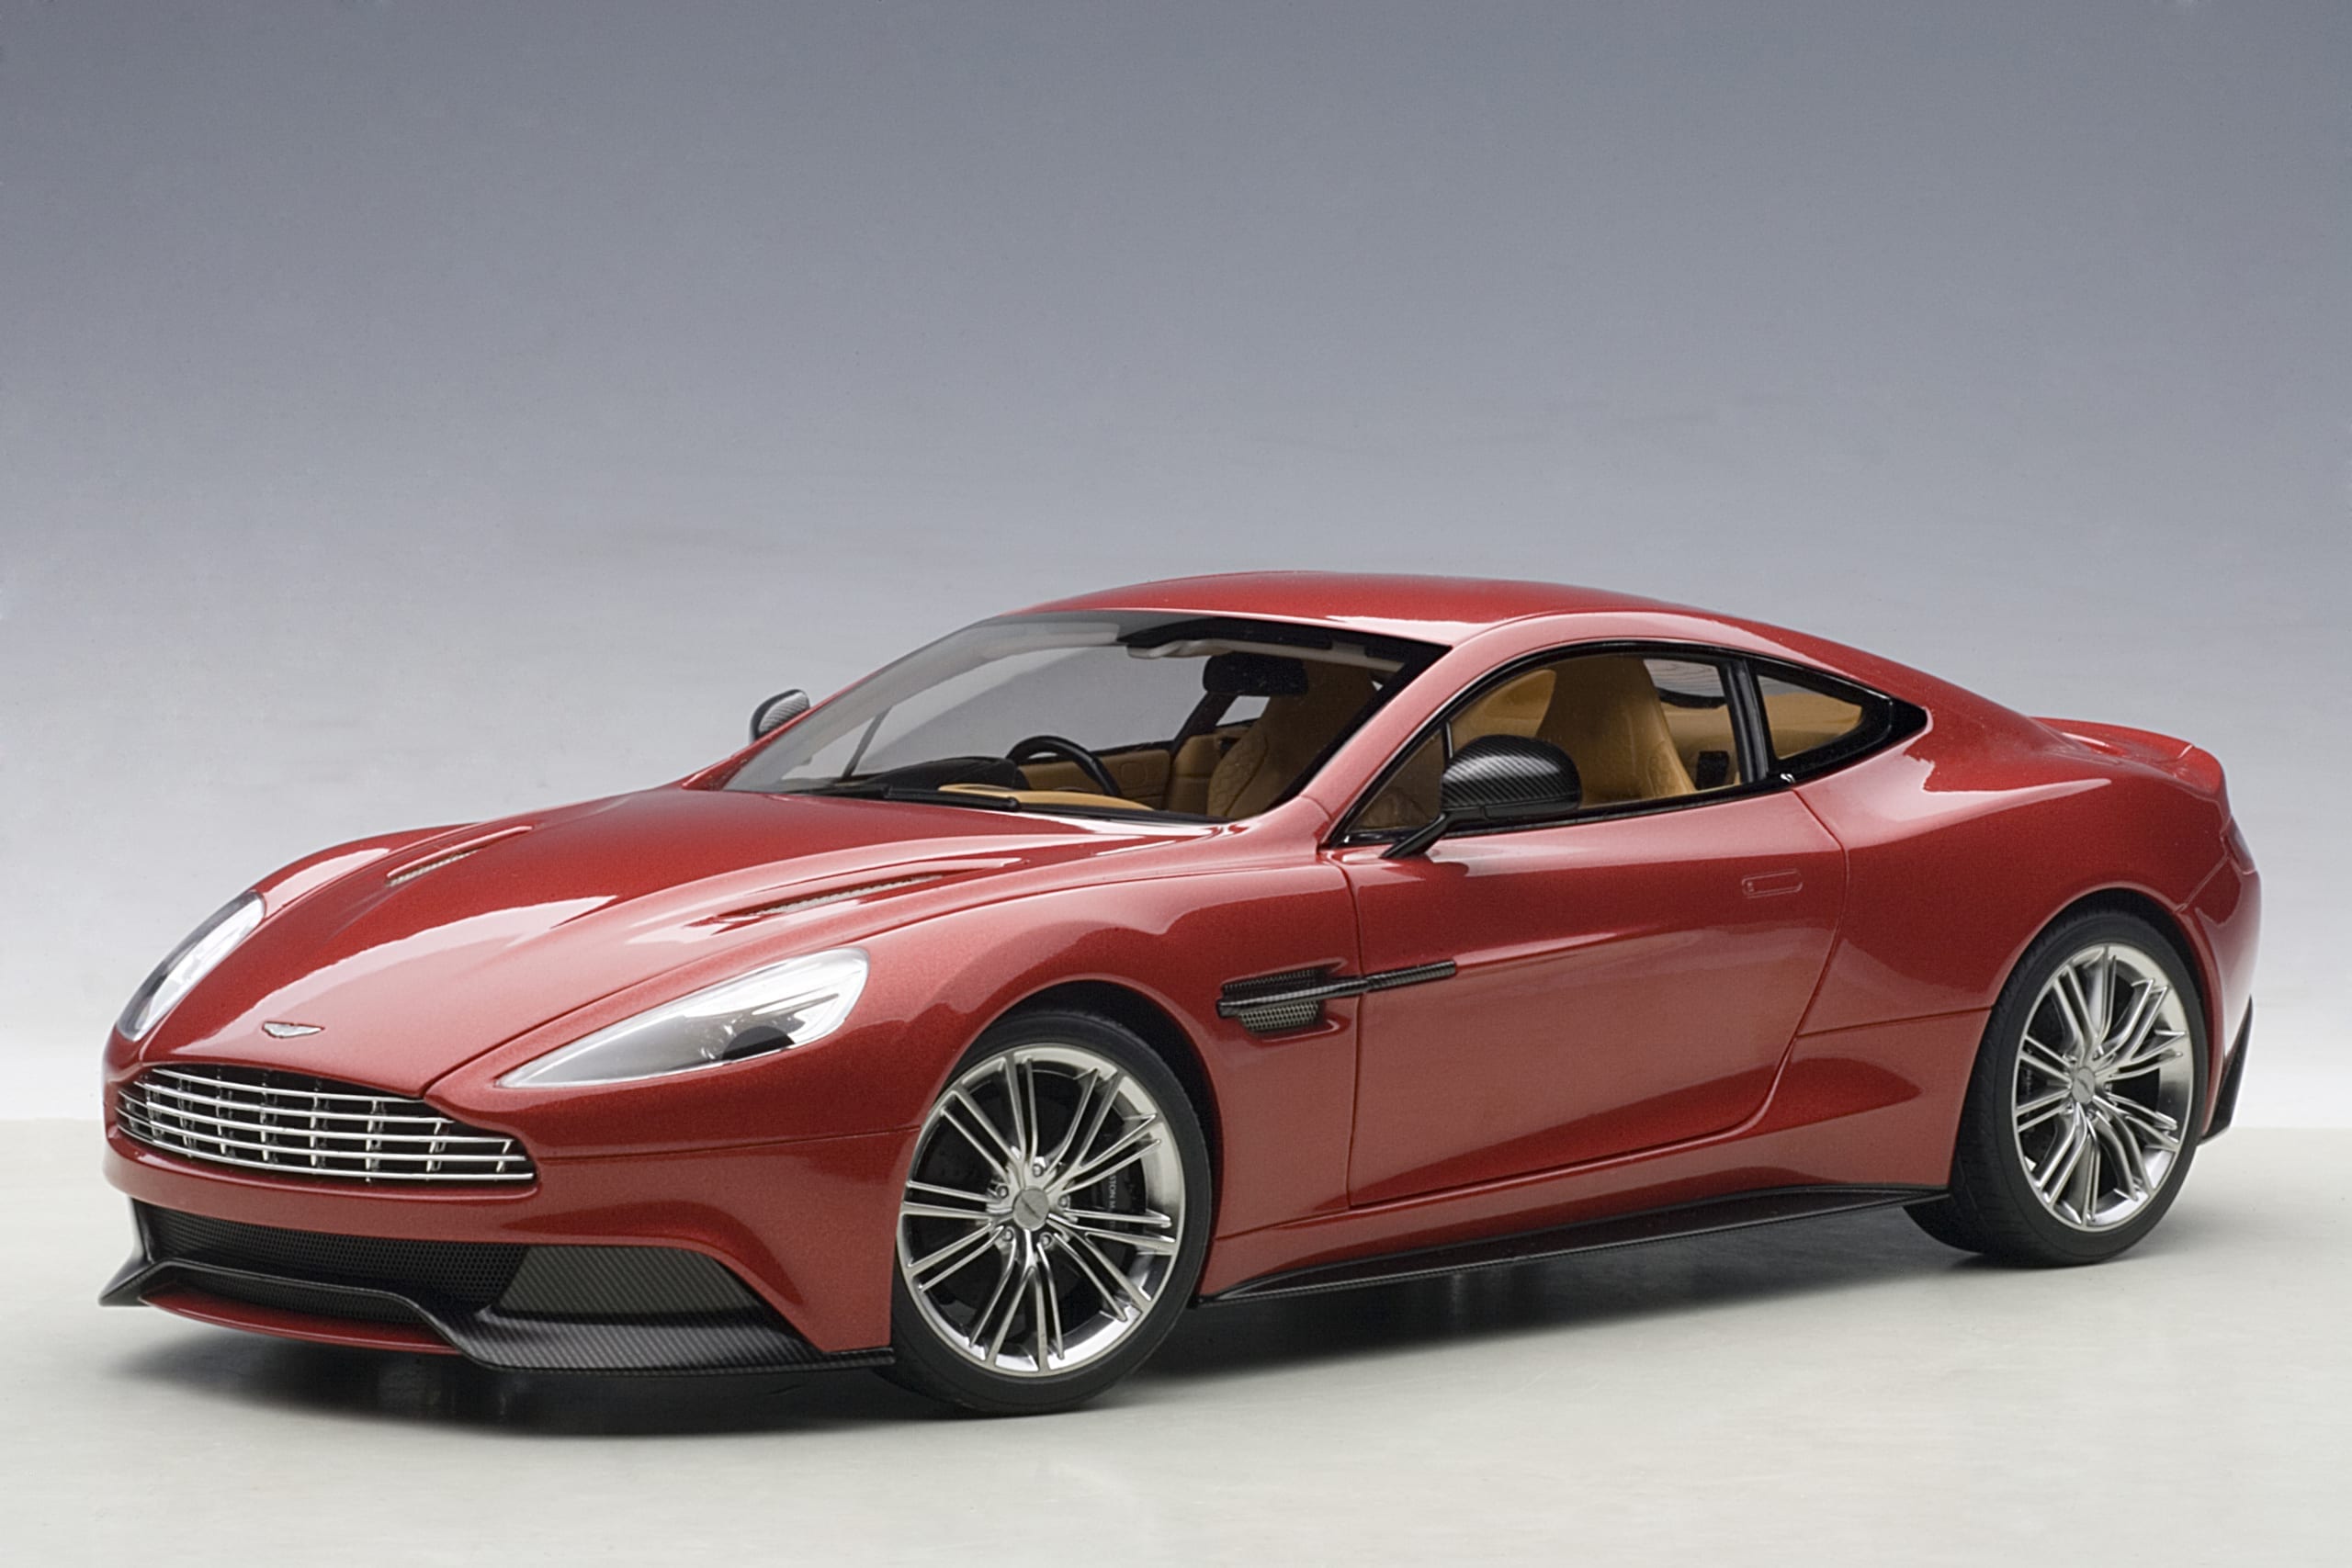 Aston Martin Vanquish 2015 (Volcano Red) | AUTOart